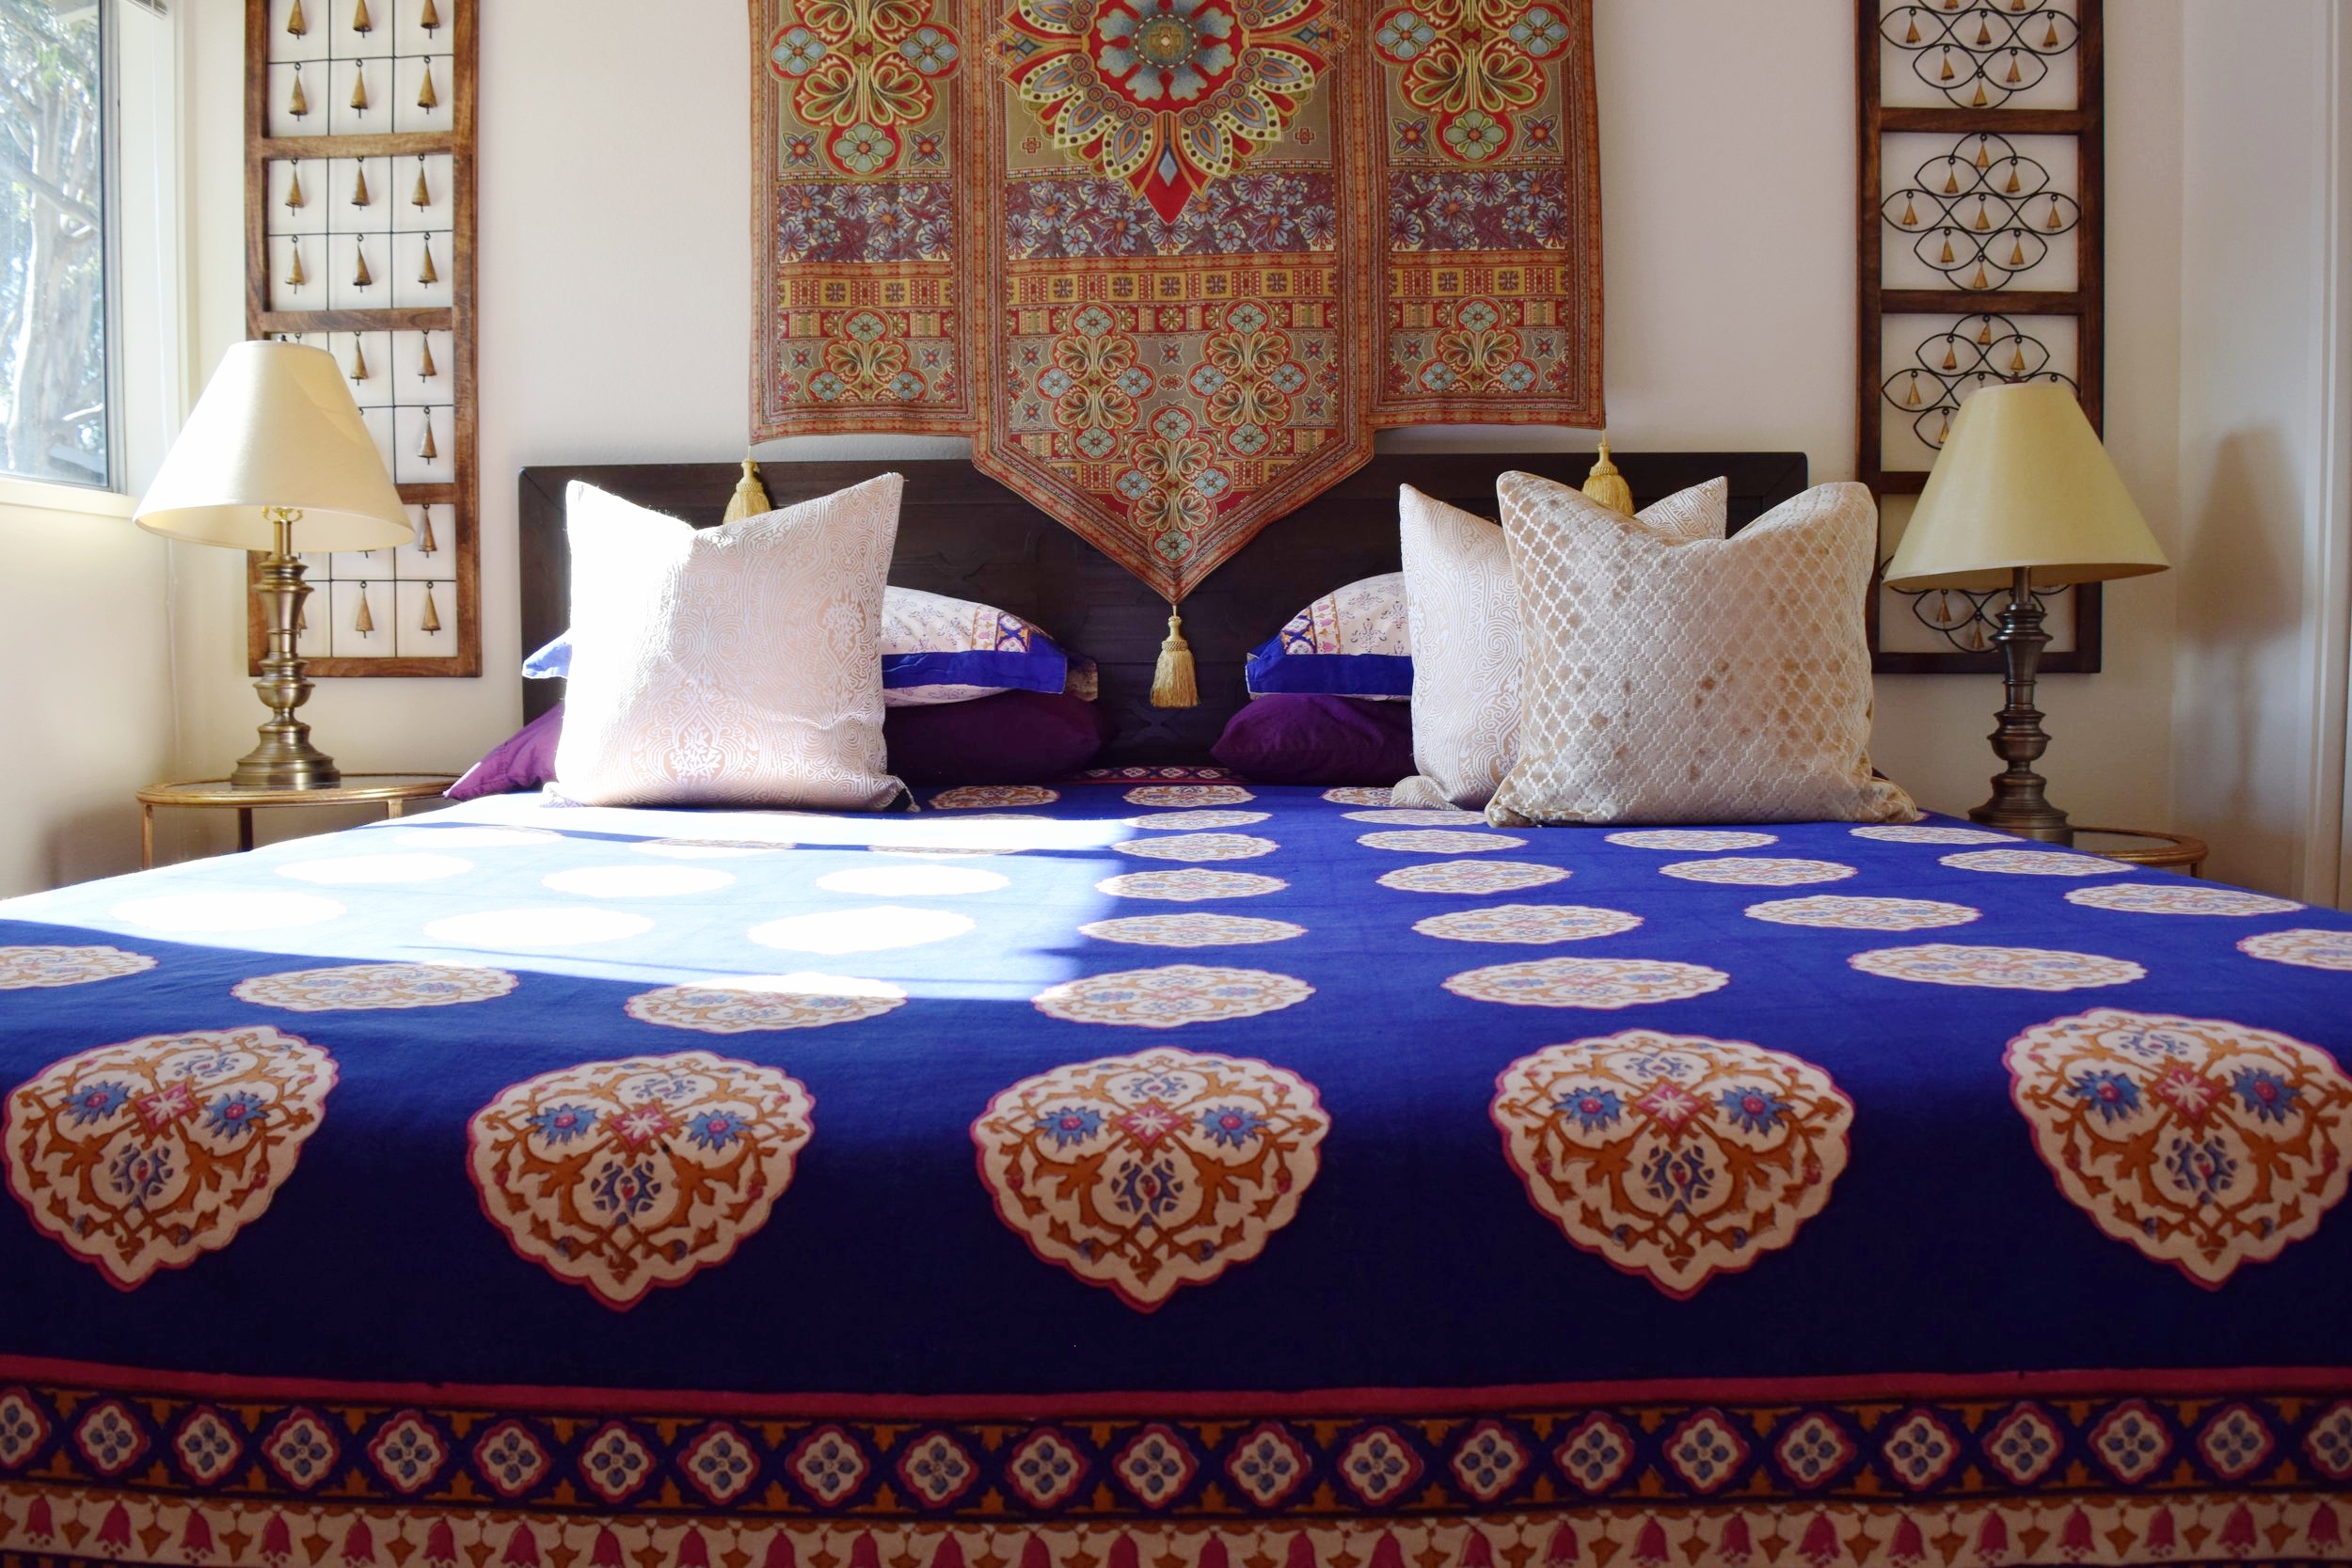 San Francisco Home:  Moroccan Bedroom Design